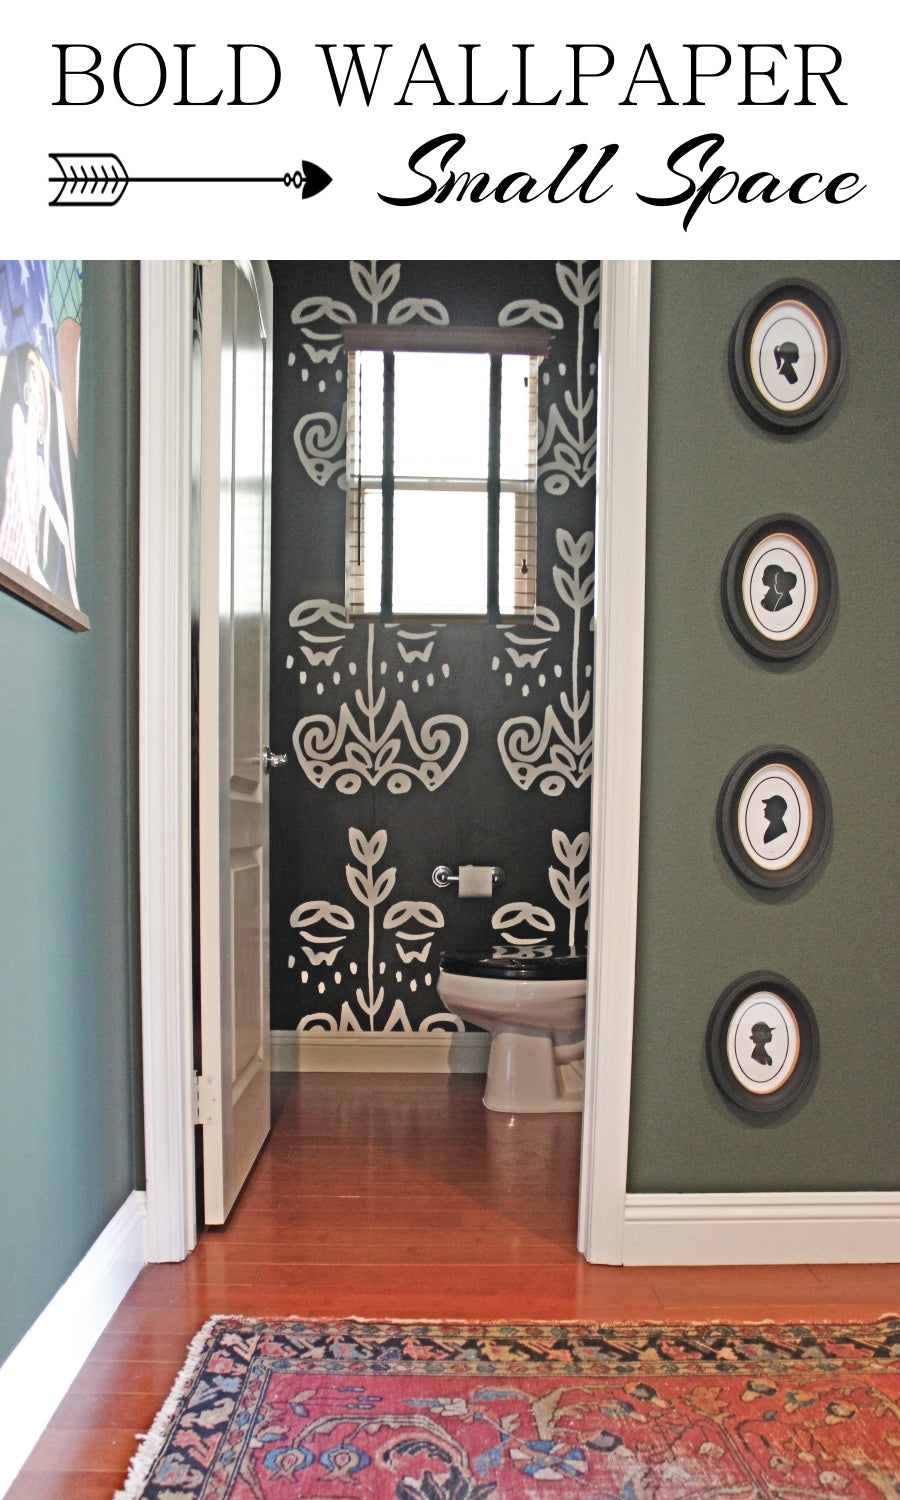 Interior Design: Bold Wallpaper In A Small Room